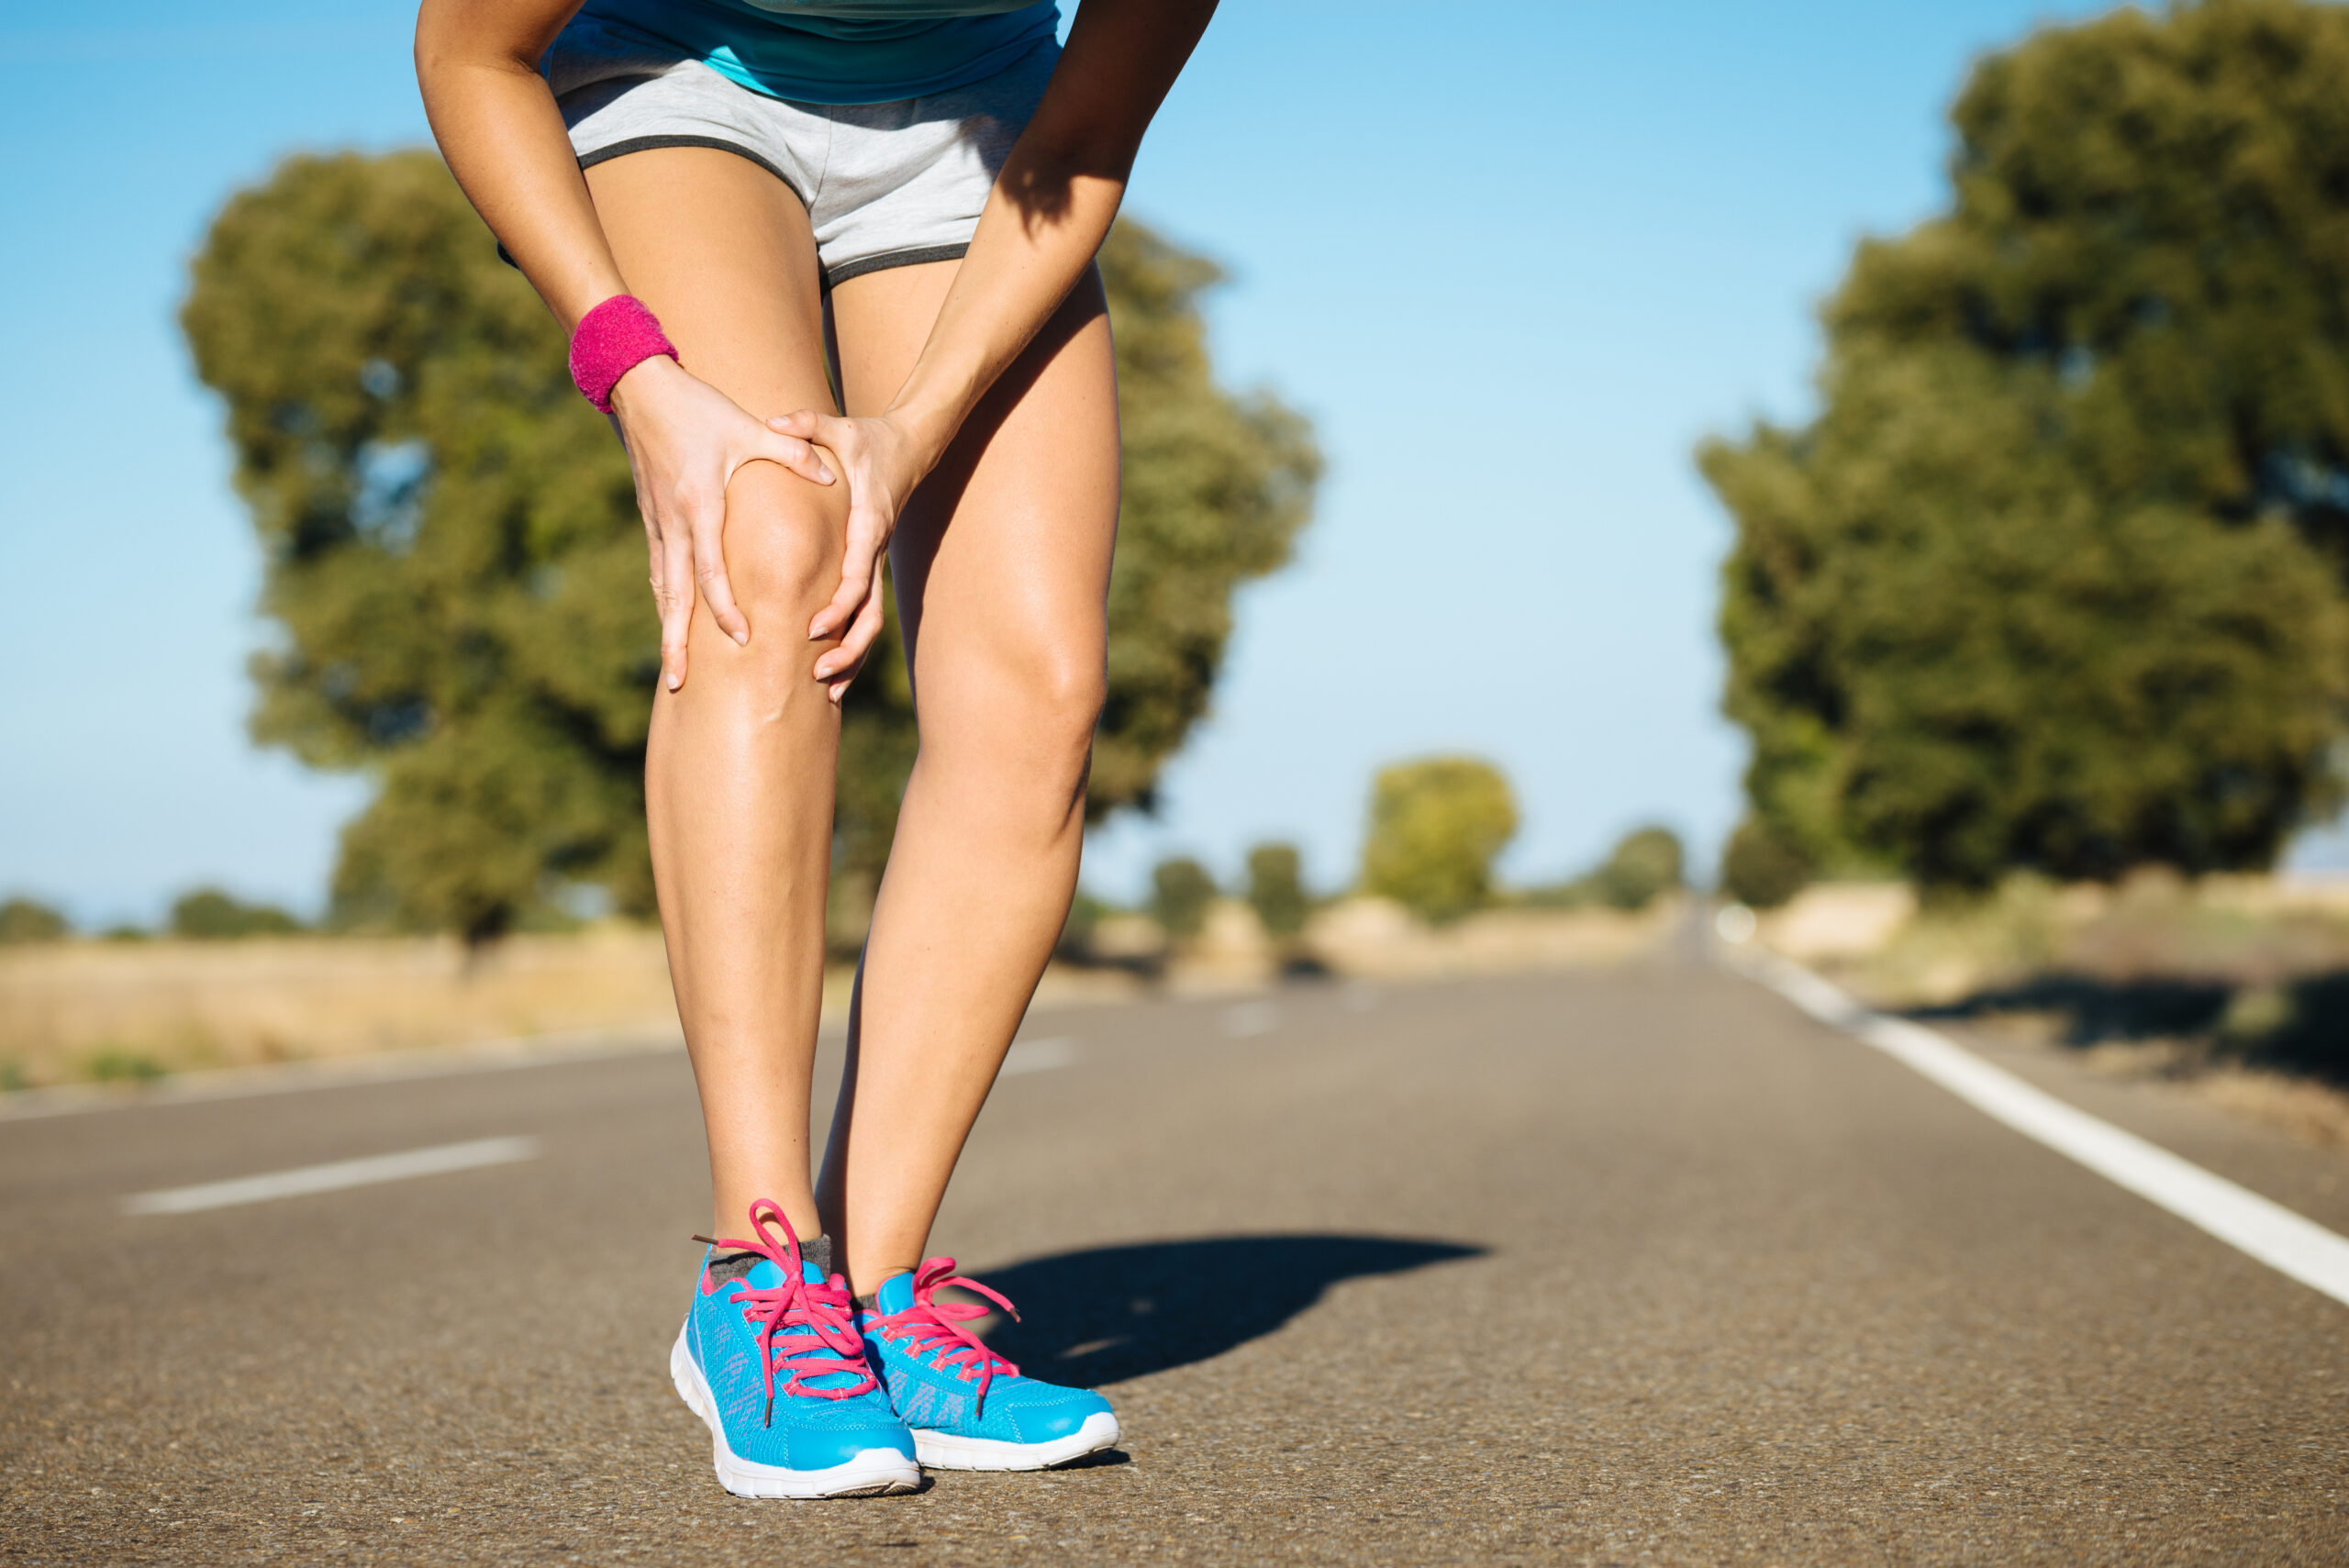 Vous ressentez une douleur au genou? Les causes susceptibles de cette douleur peuvent être diverses: arthrose, entorse, lésion méniscale, bursite, etc.